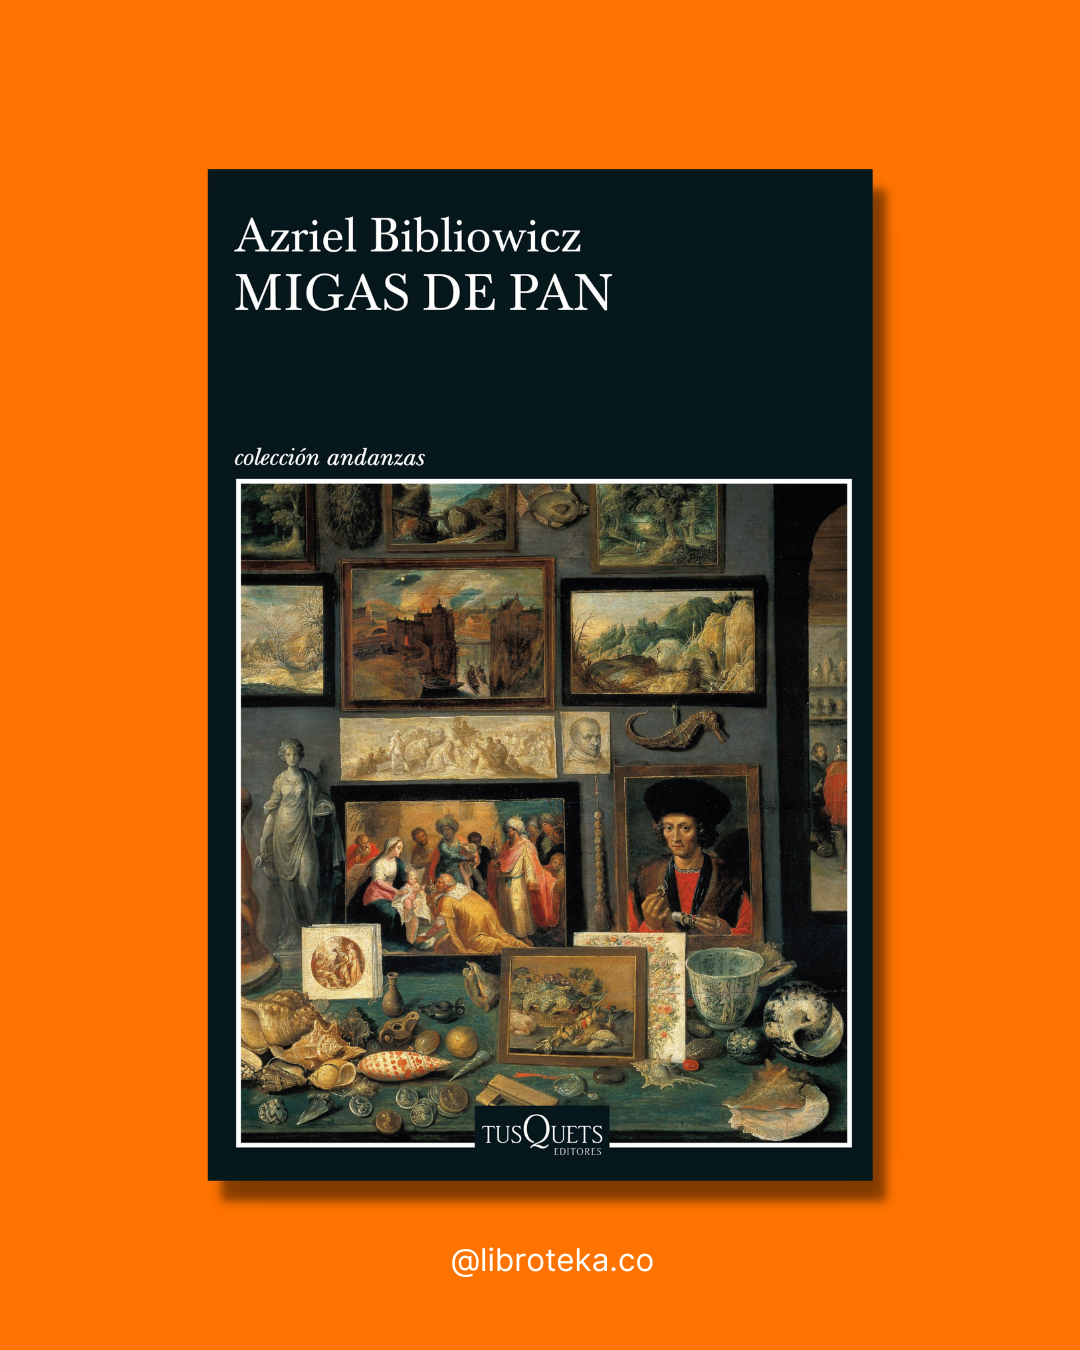 Migas de pan - Azriel Bibliowicz